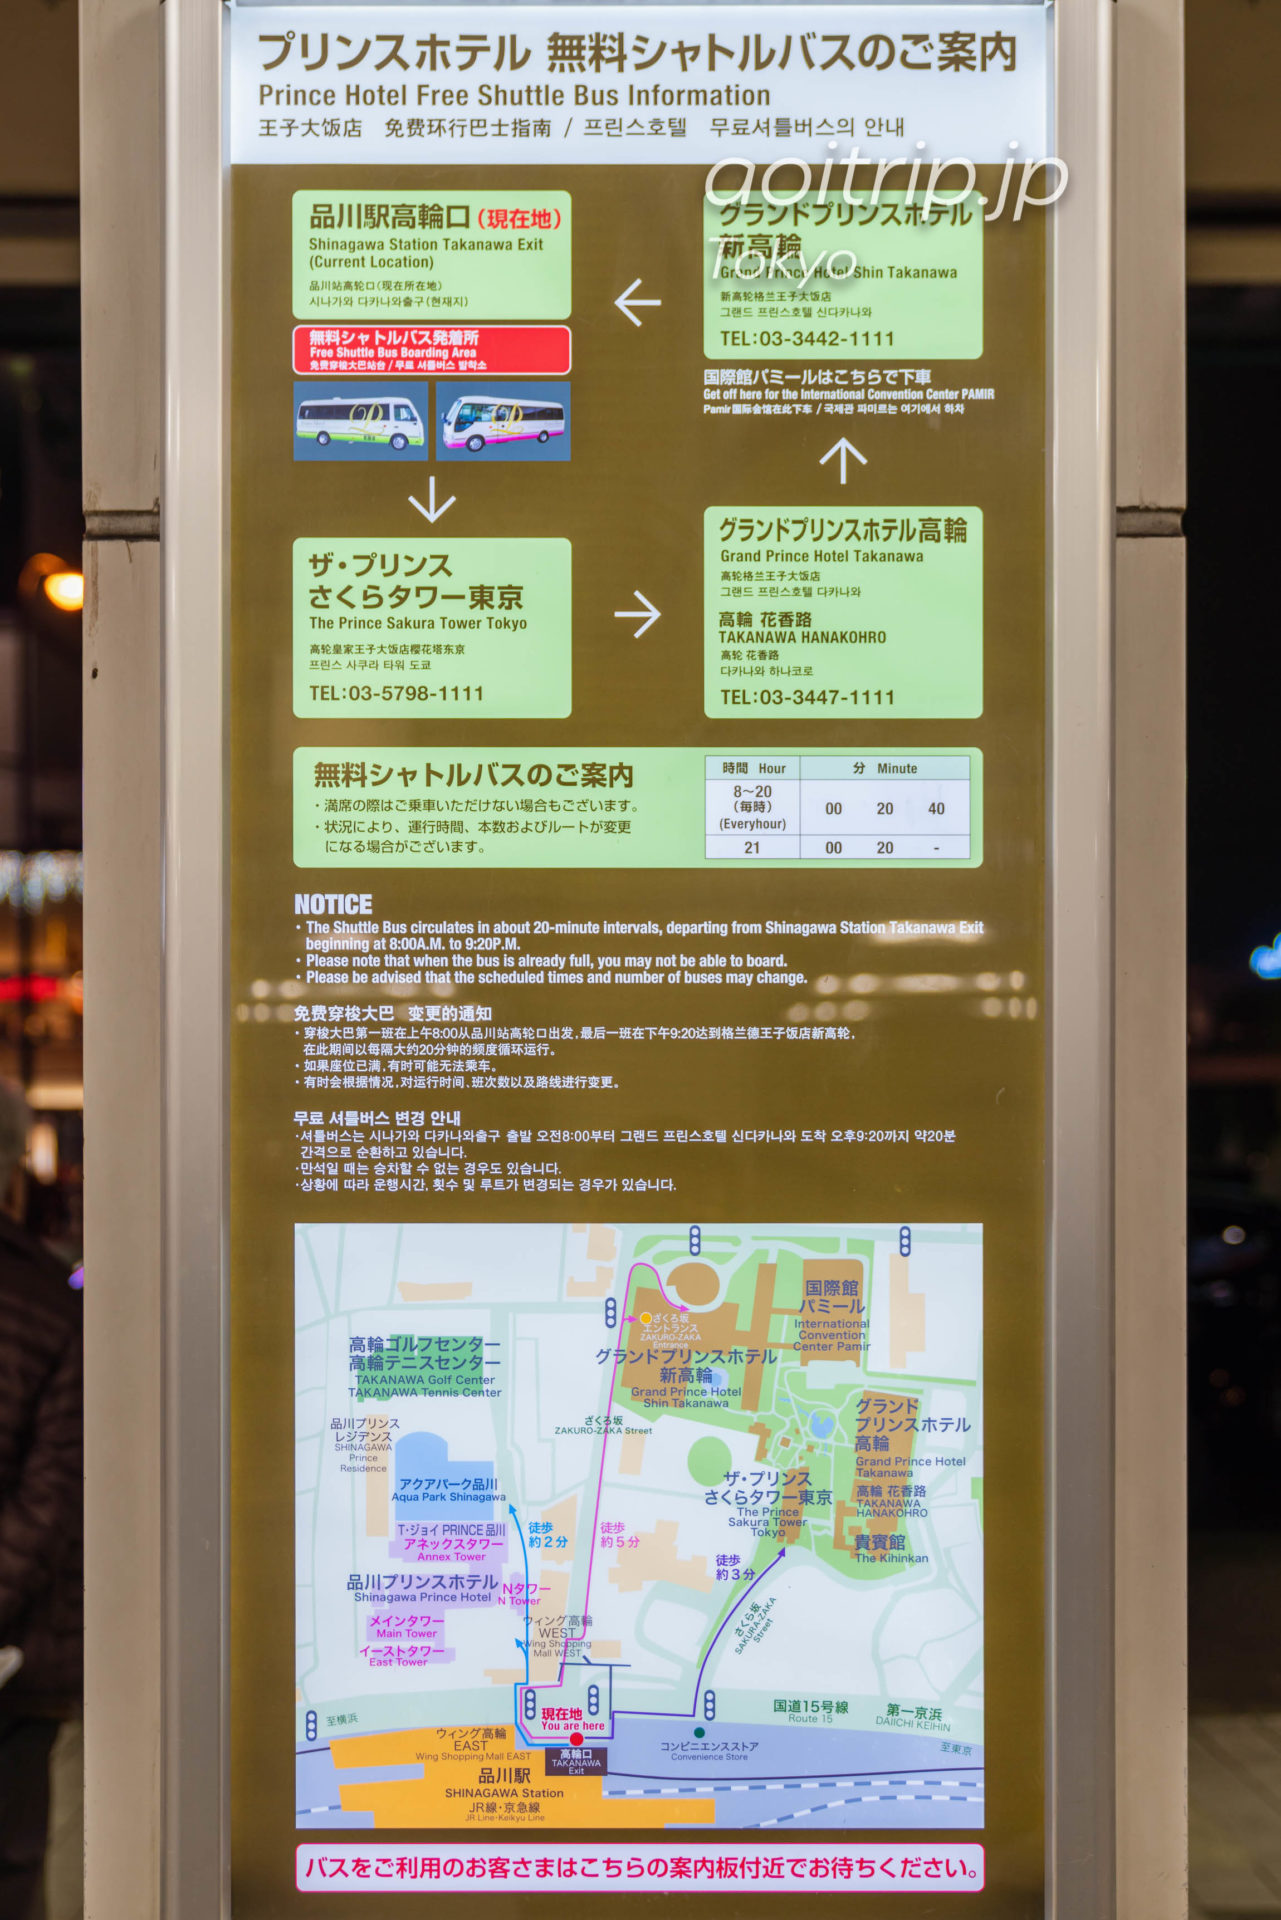 ザ プリンス さくらタワー東京の無料シャトルバス